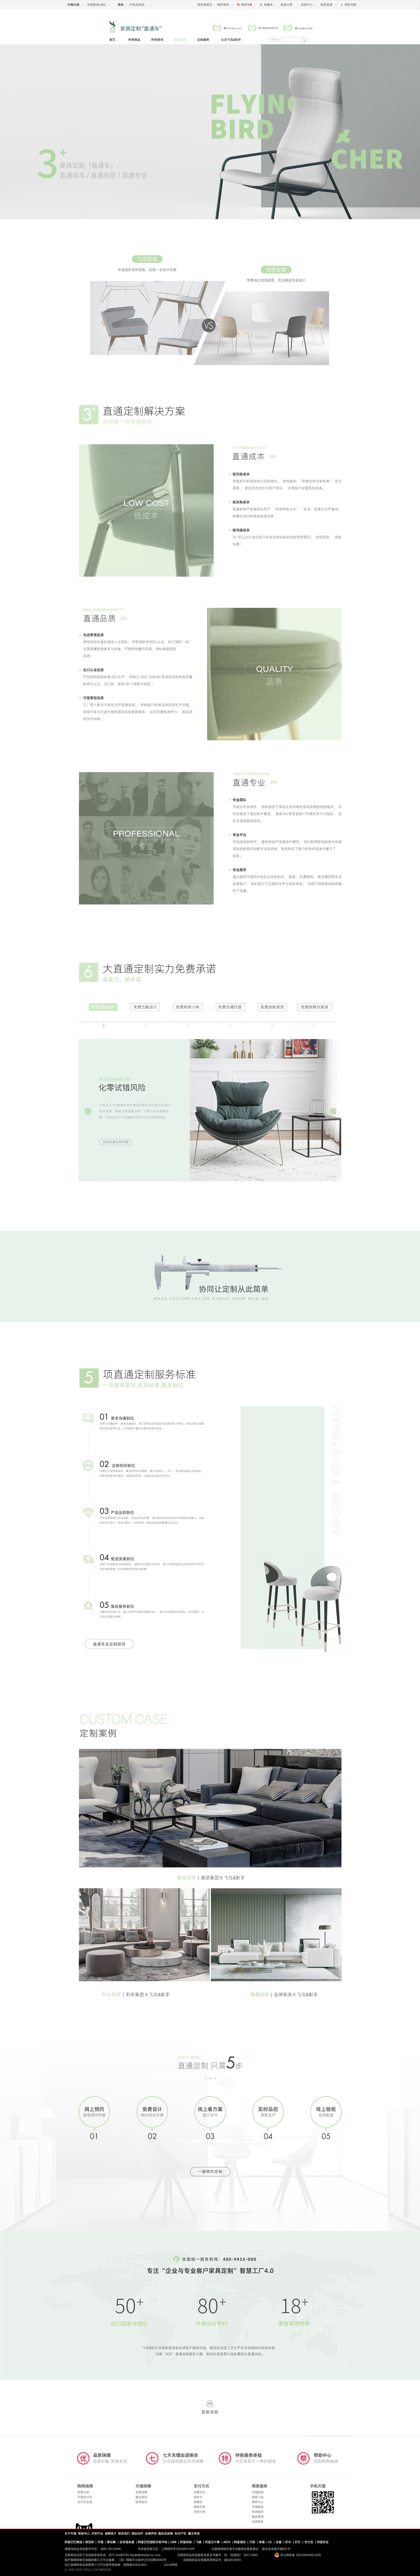 家具电商网站设计-飞鸟射手家具